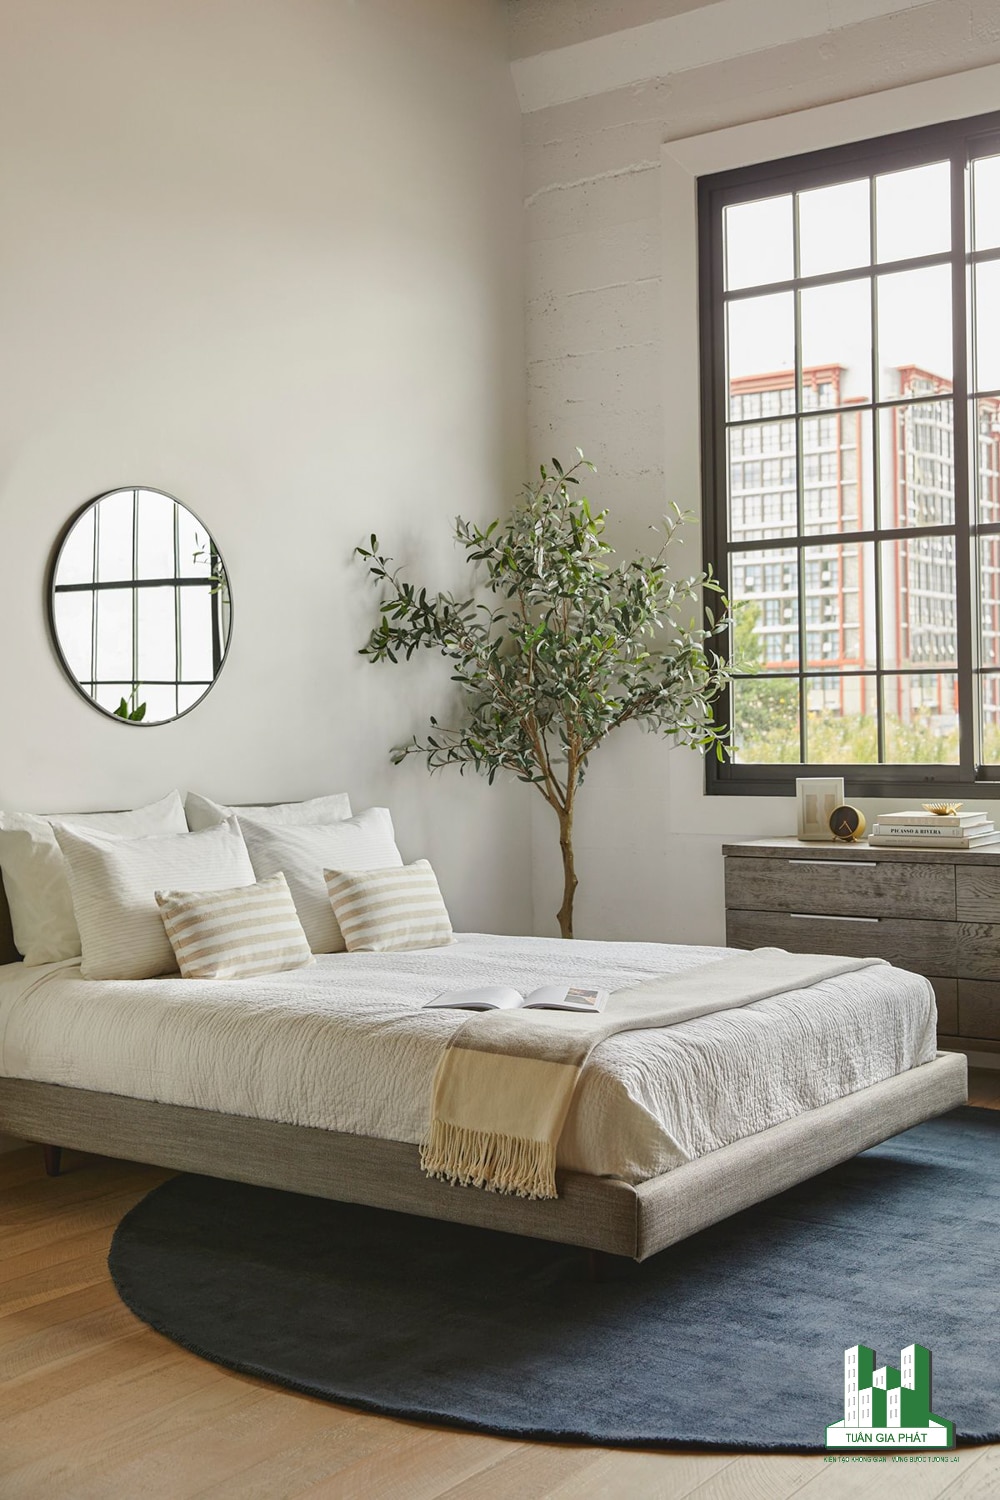 Phong cách hiện đại với giường nổi màu xám, tủ đựng quần áo bằng gỗ cũng tone màu này, cây thông, bộ khăn trải giường màu trung tính và chiếc gương tròn.